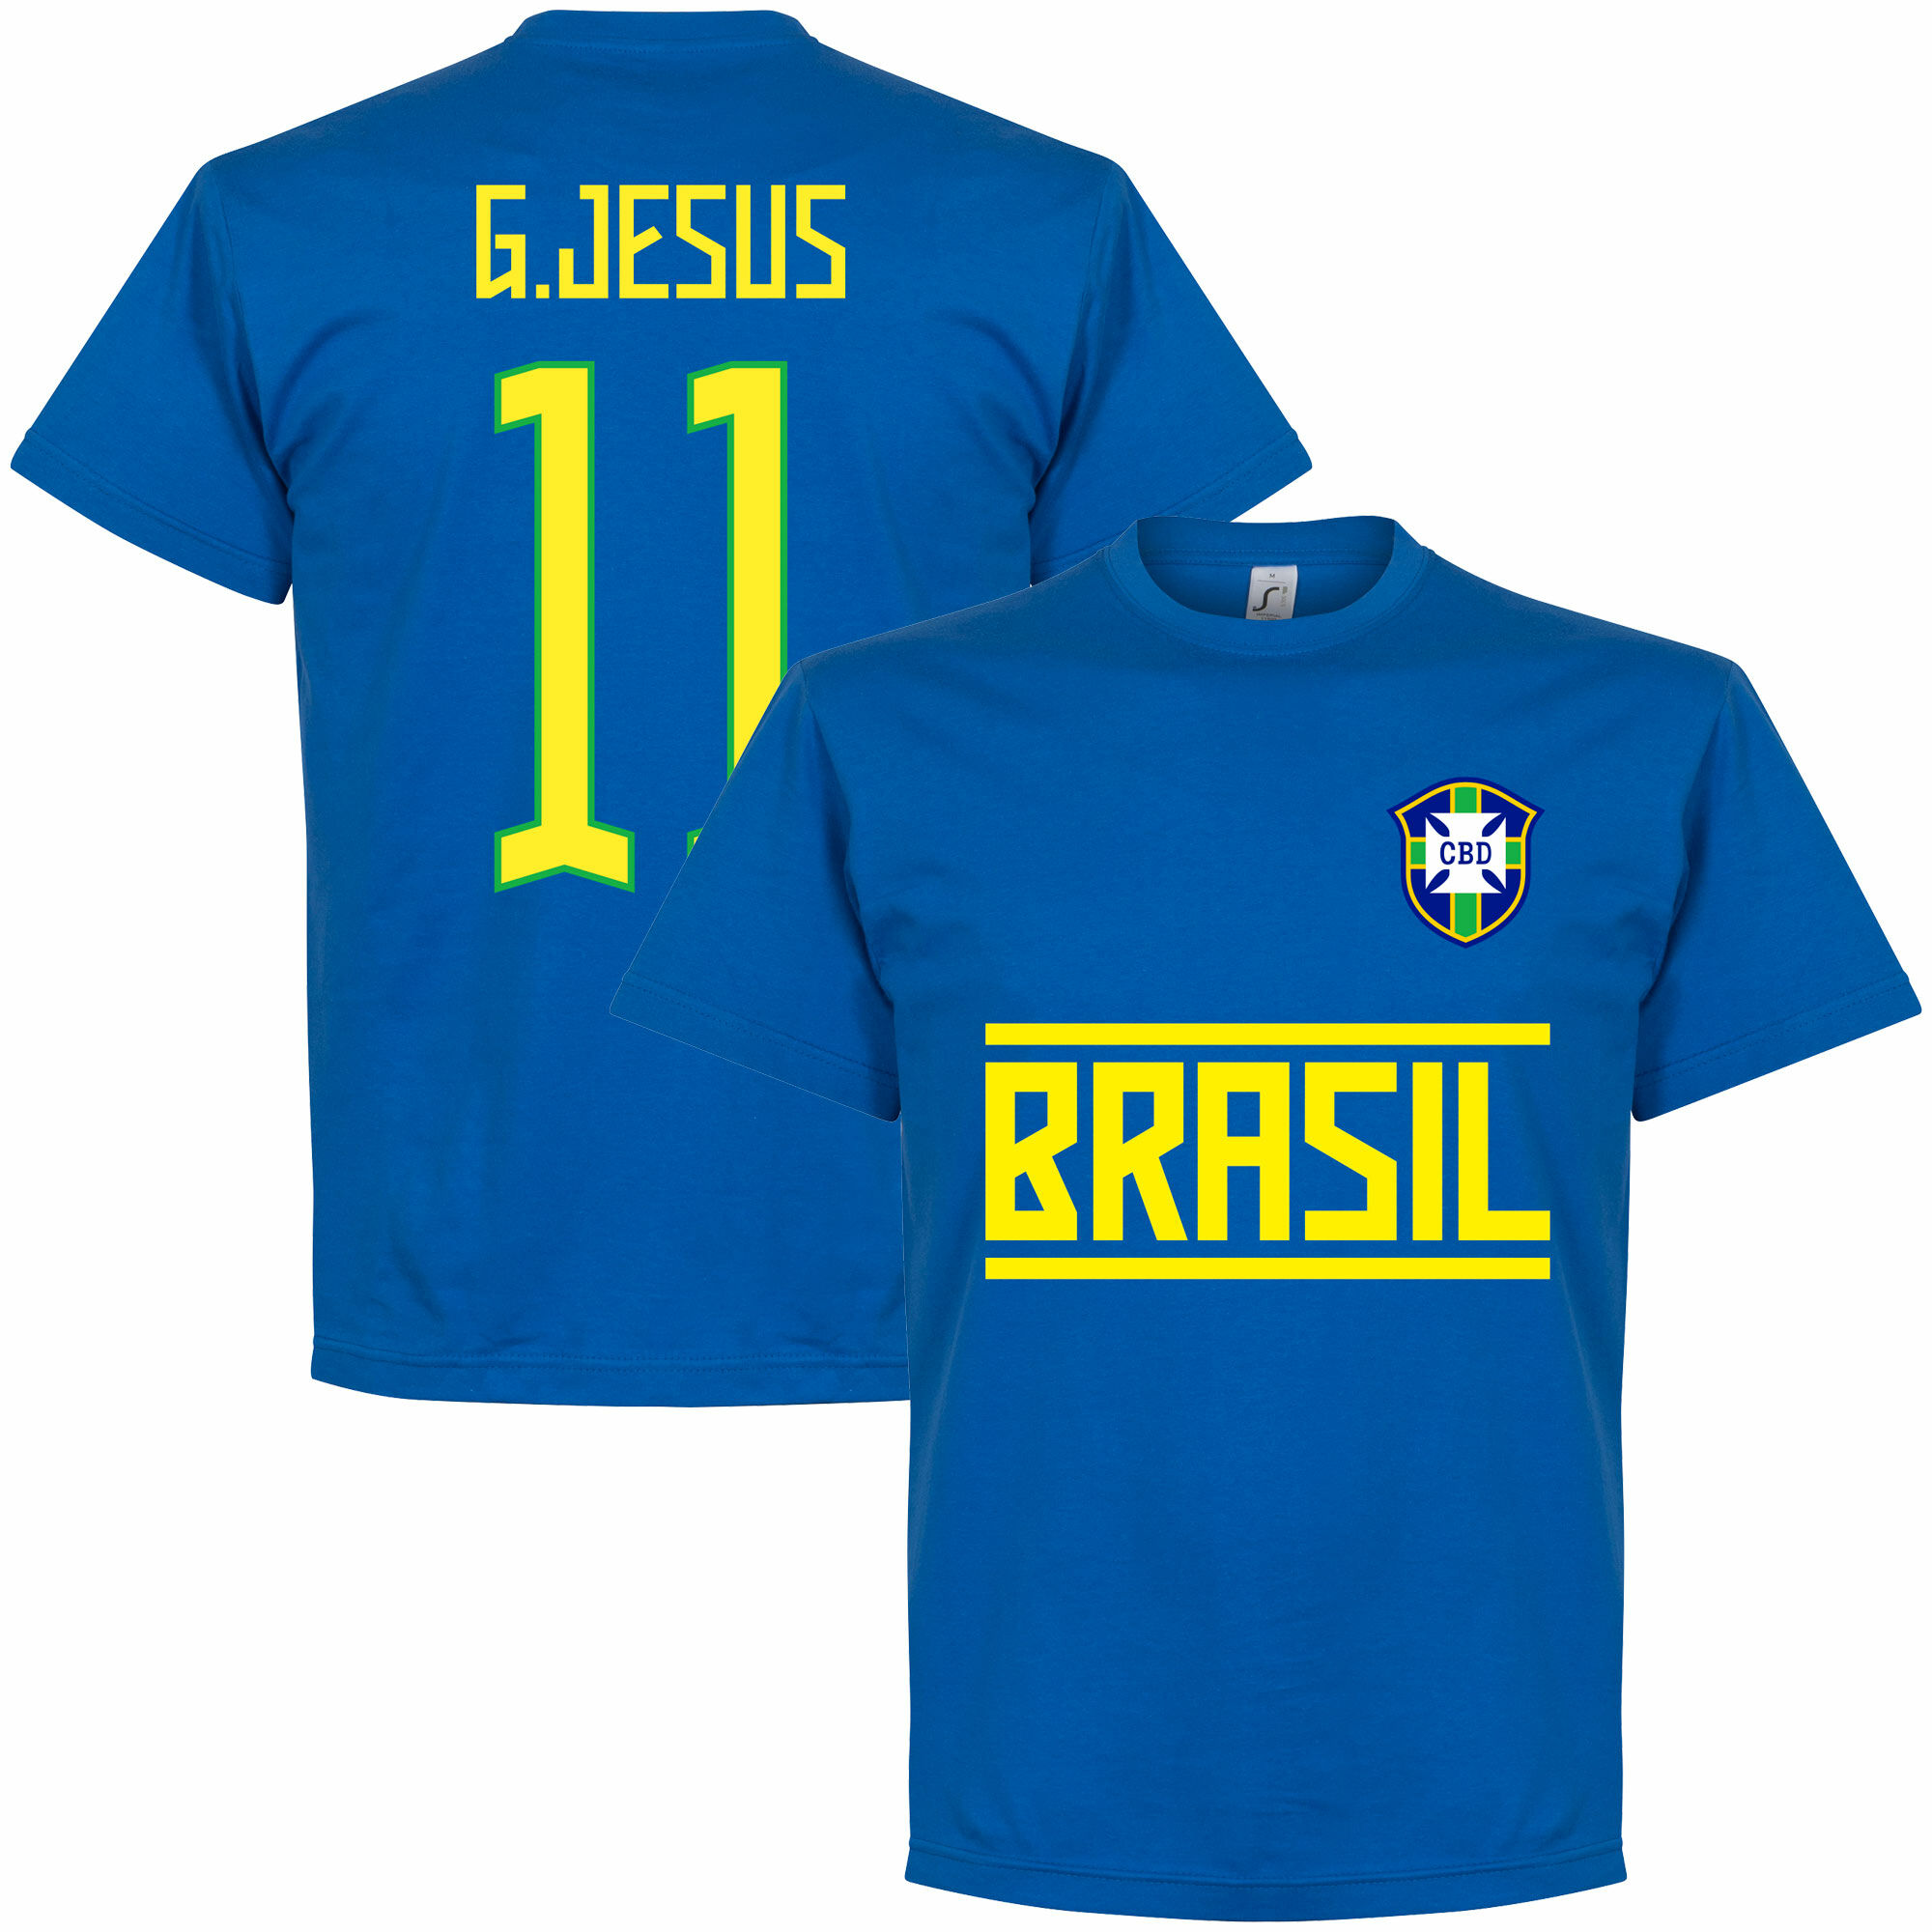 Brazílie - Tričko - Gabriel Jesus, číslo 11, modré